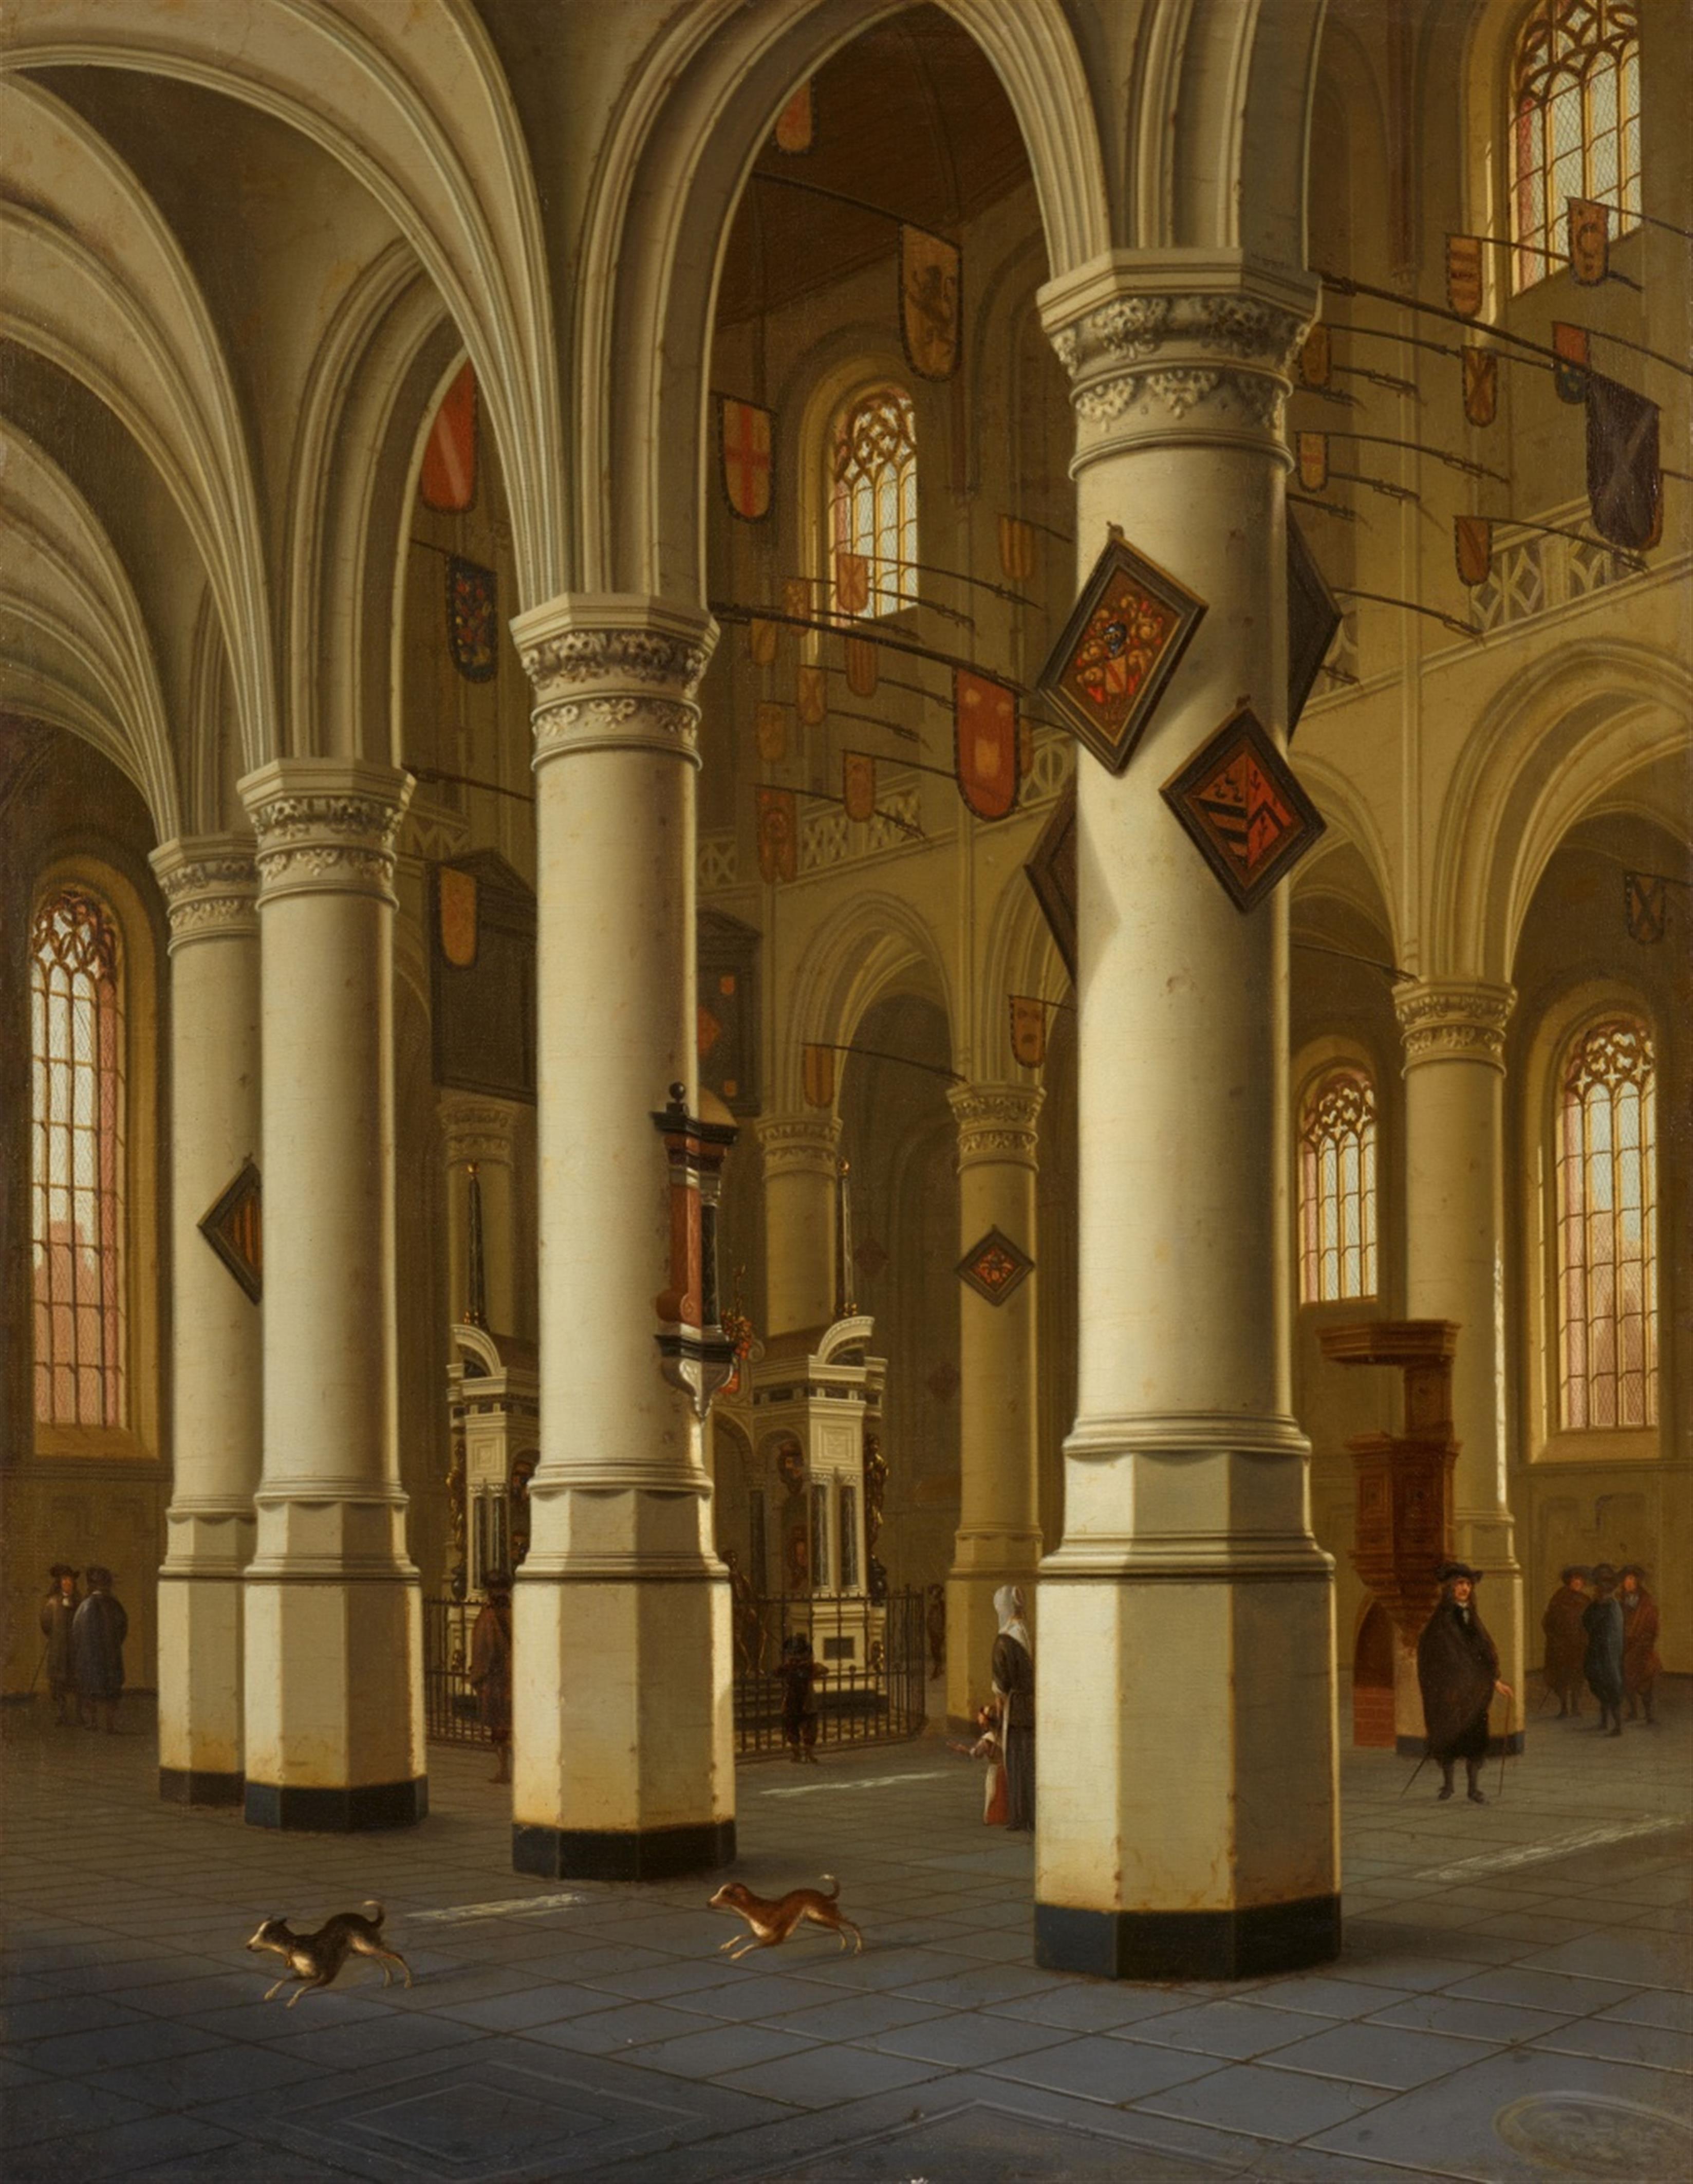 Hendrick Cornelisz van Vliet - Interior of the Nieuwe Kerk in Delft, with the Tomb of Willem I of Orange